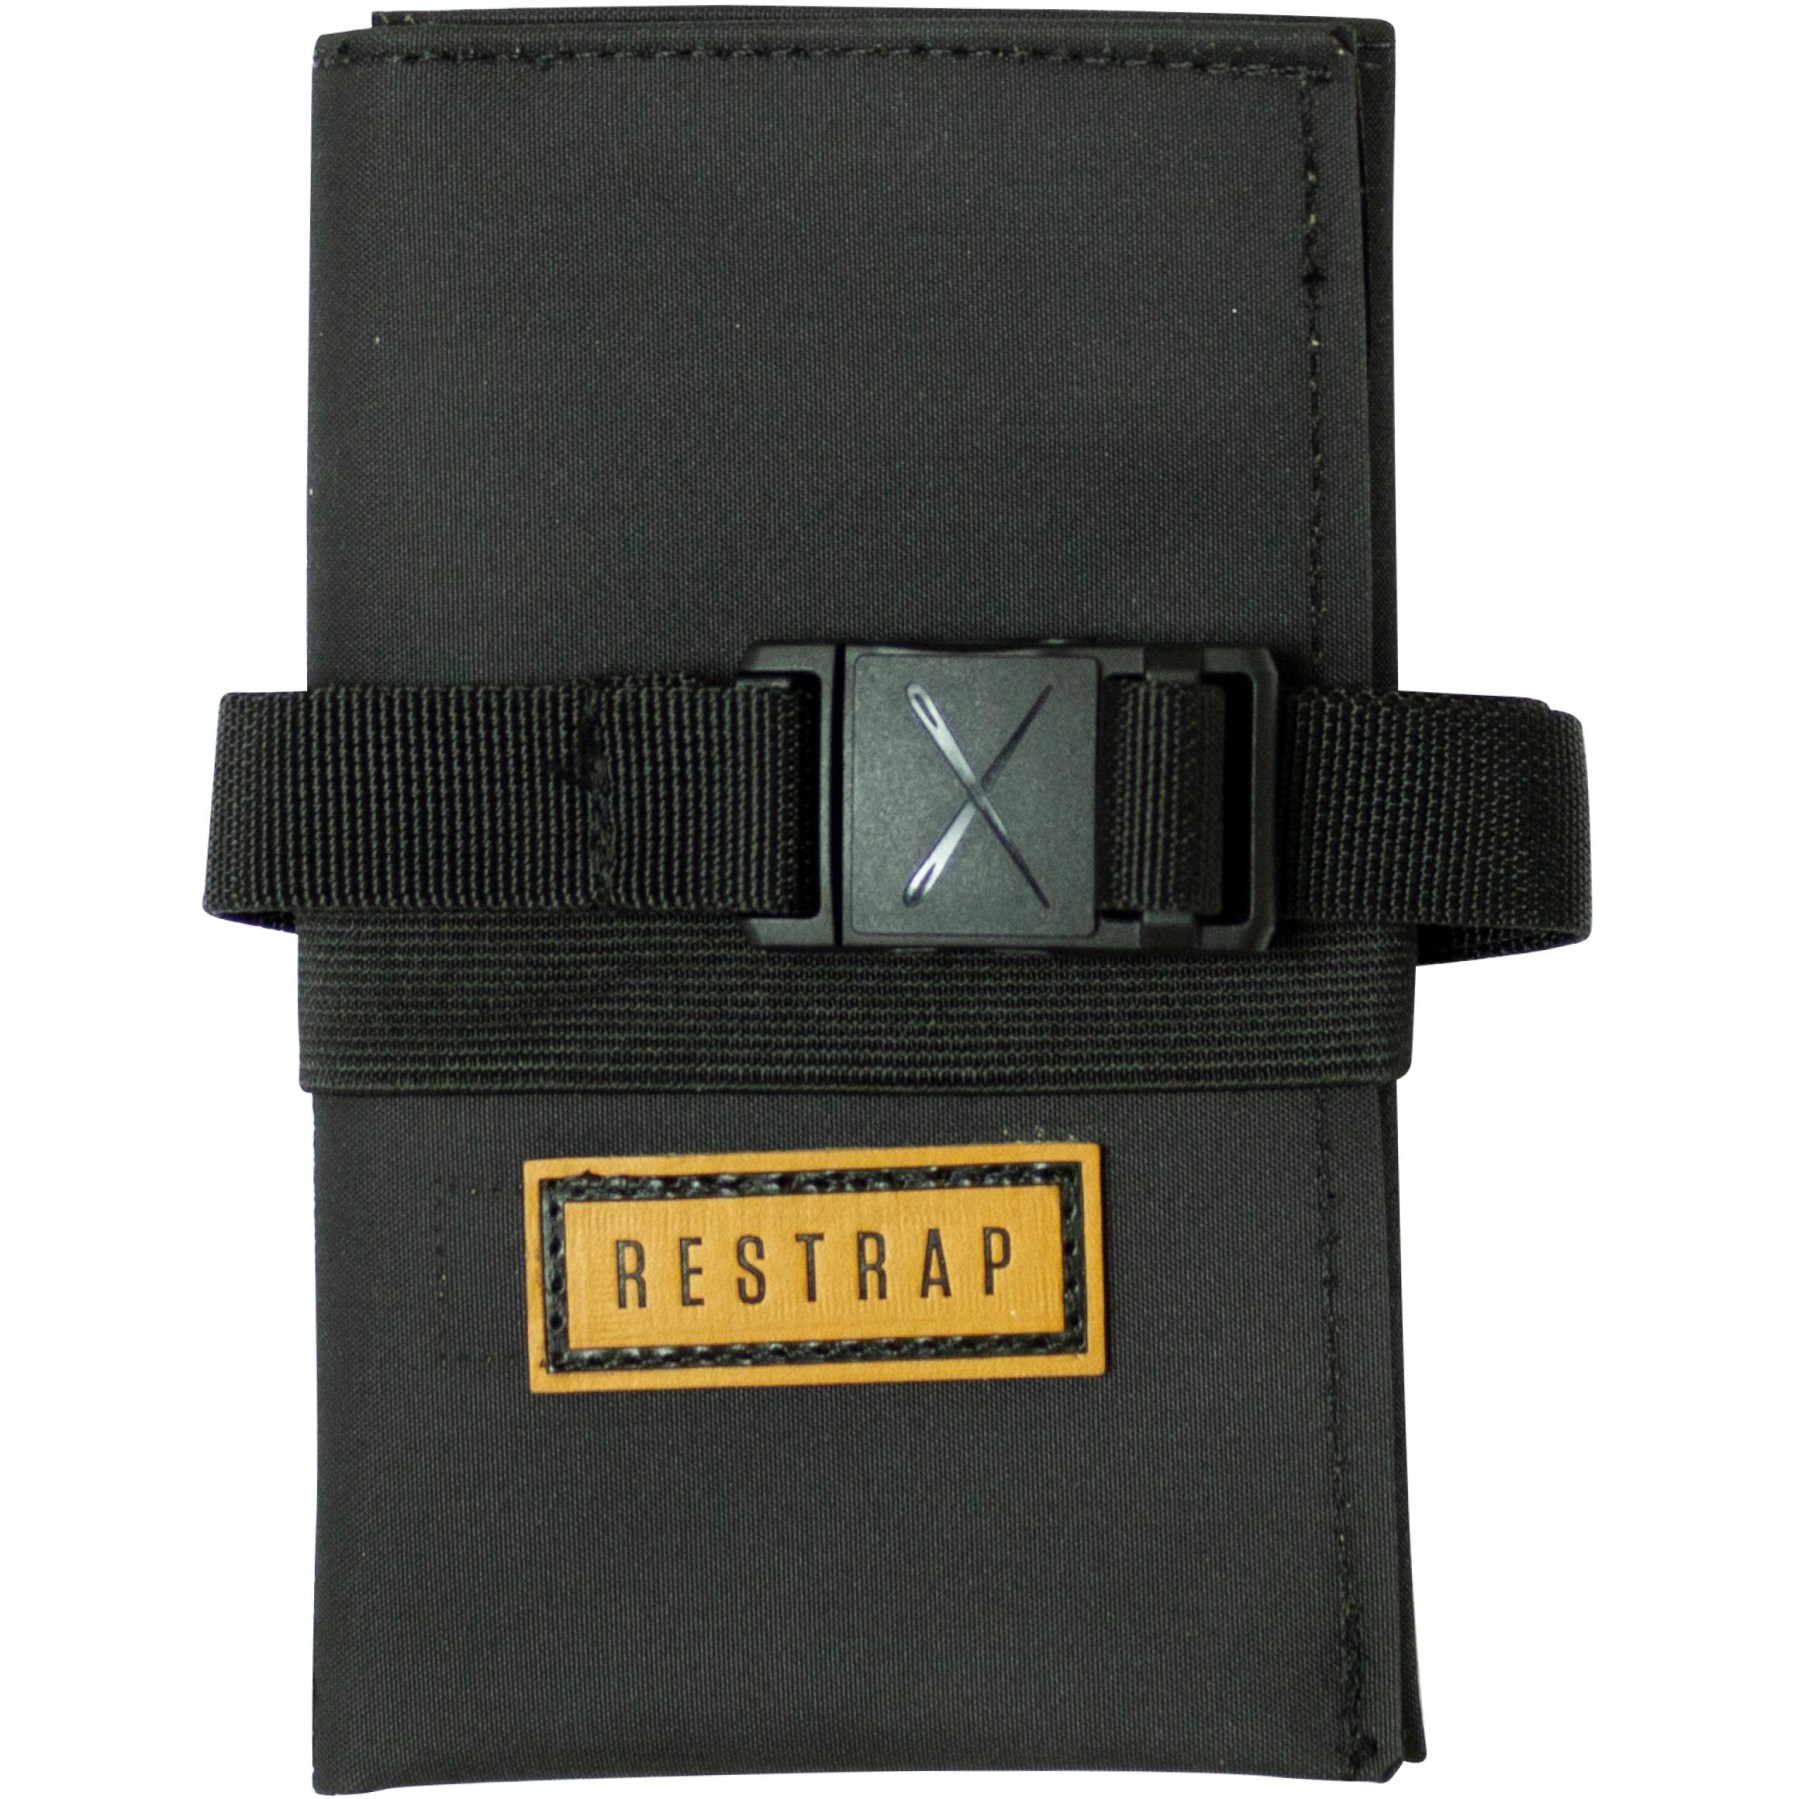 Produktbild von Restrap Tool Roll Bag Werkzeugtasche - schwarz